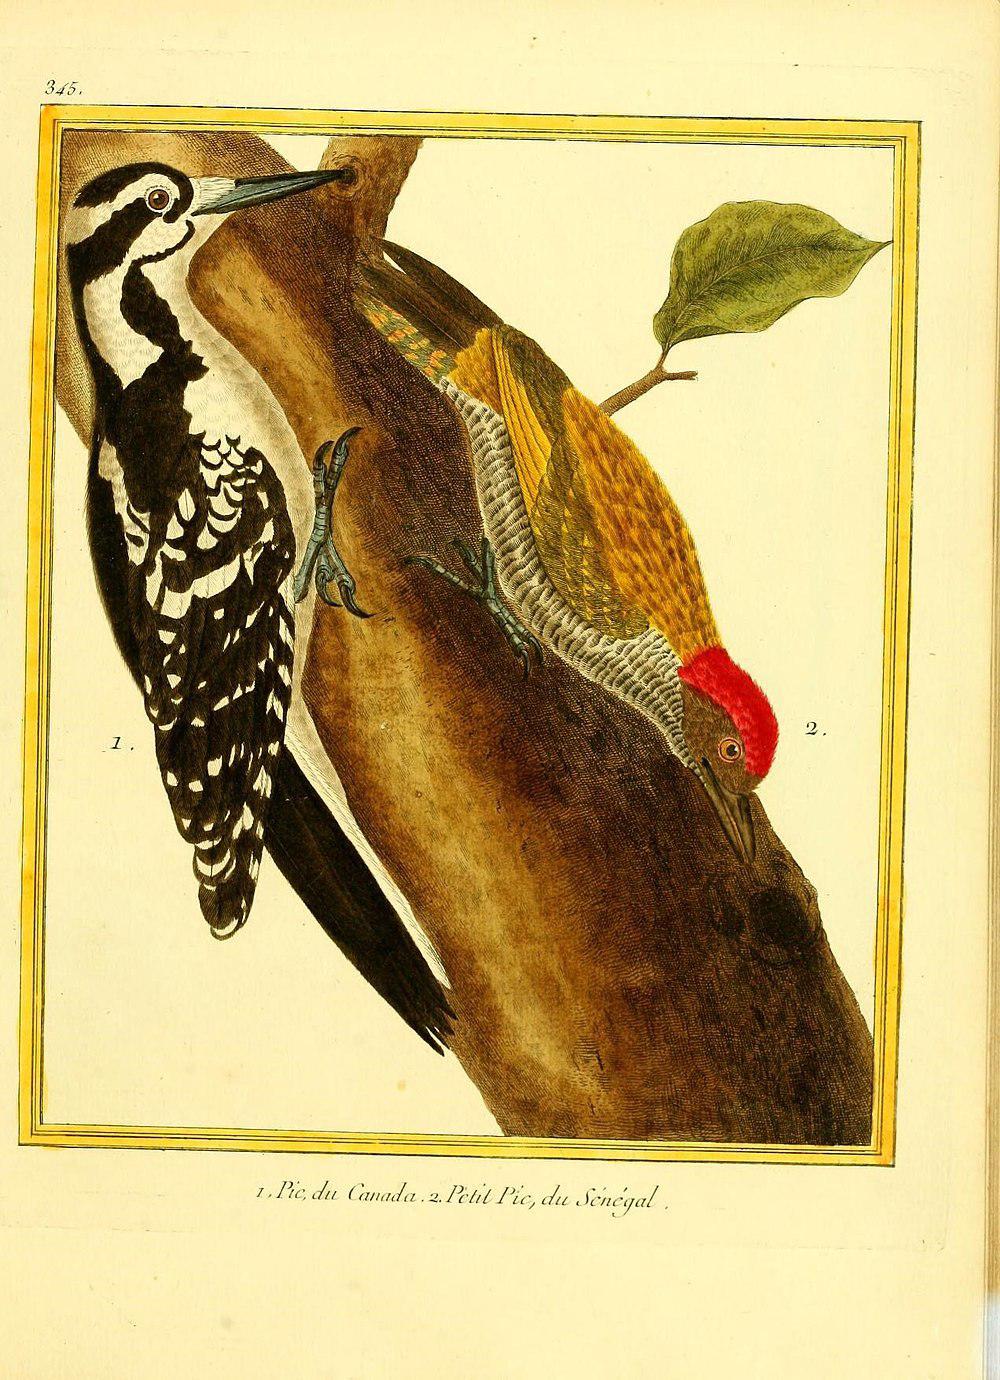 小绿啄木鸟 / Little Green Woodpecker / Campethera maculosa